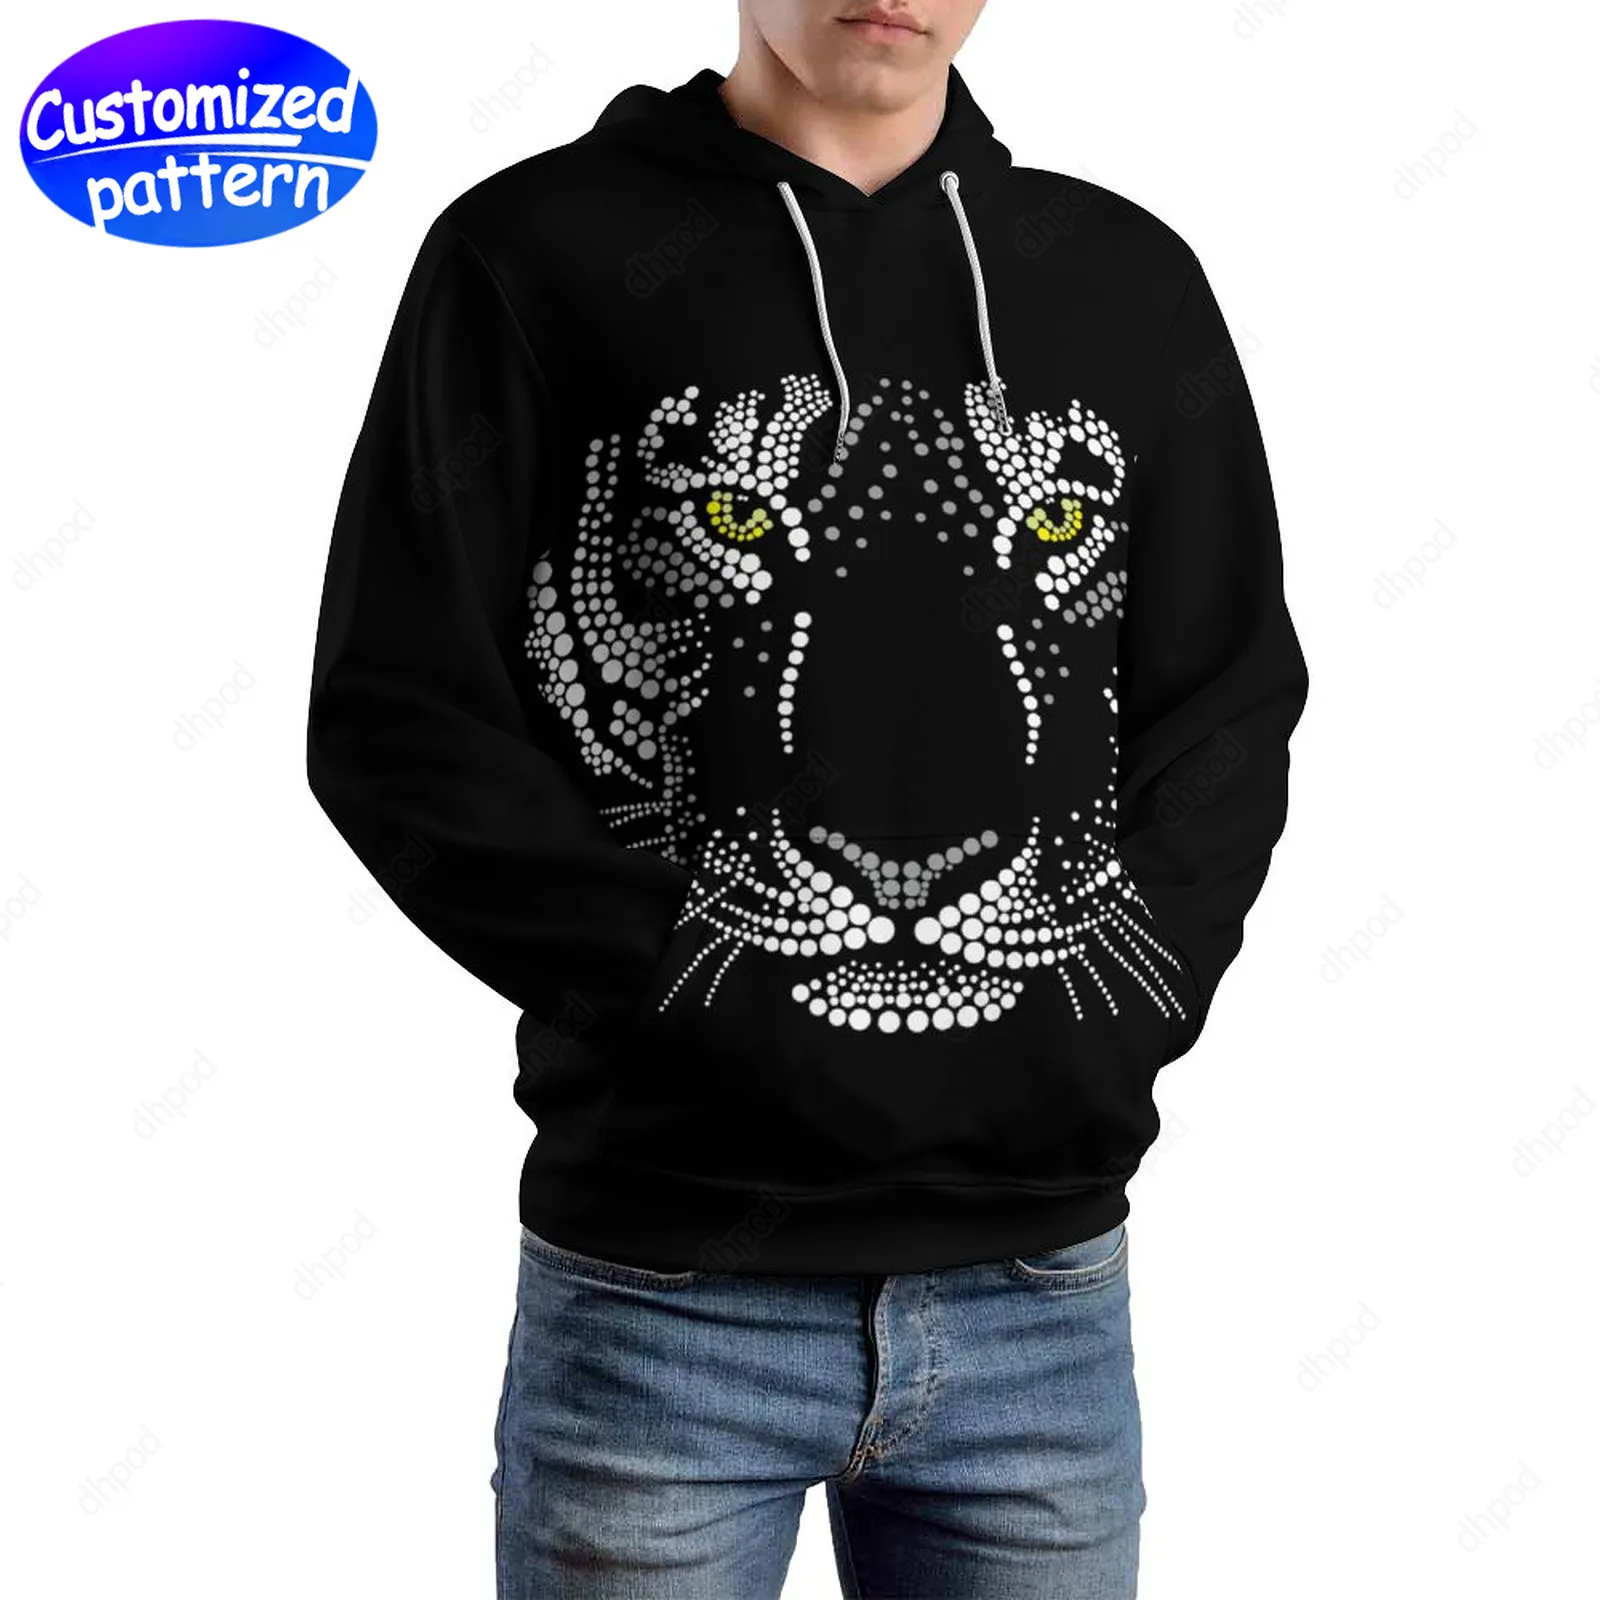 Designer Hommes Sweats à capuche Sweatshirts Black Tiger Hip-Hop Rock Casquettes à motifs personnalisées Casual Athleisure Sports Outdoor Sweat à capuche en gros Vêtements pour hommes grande taille S-5XL